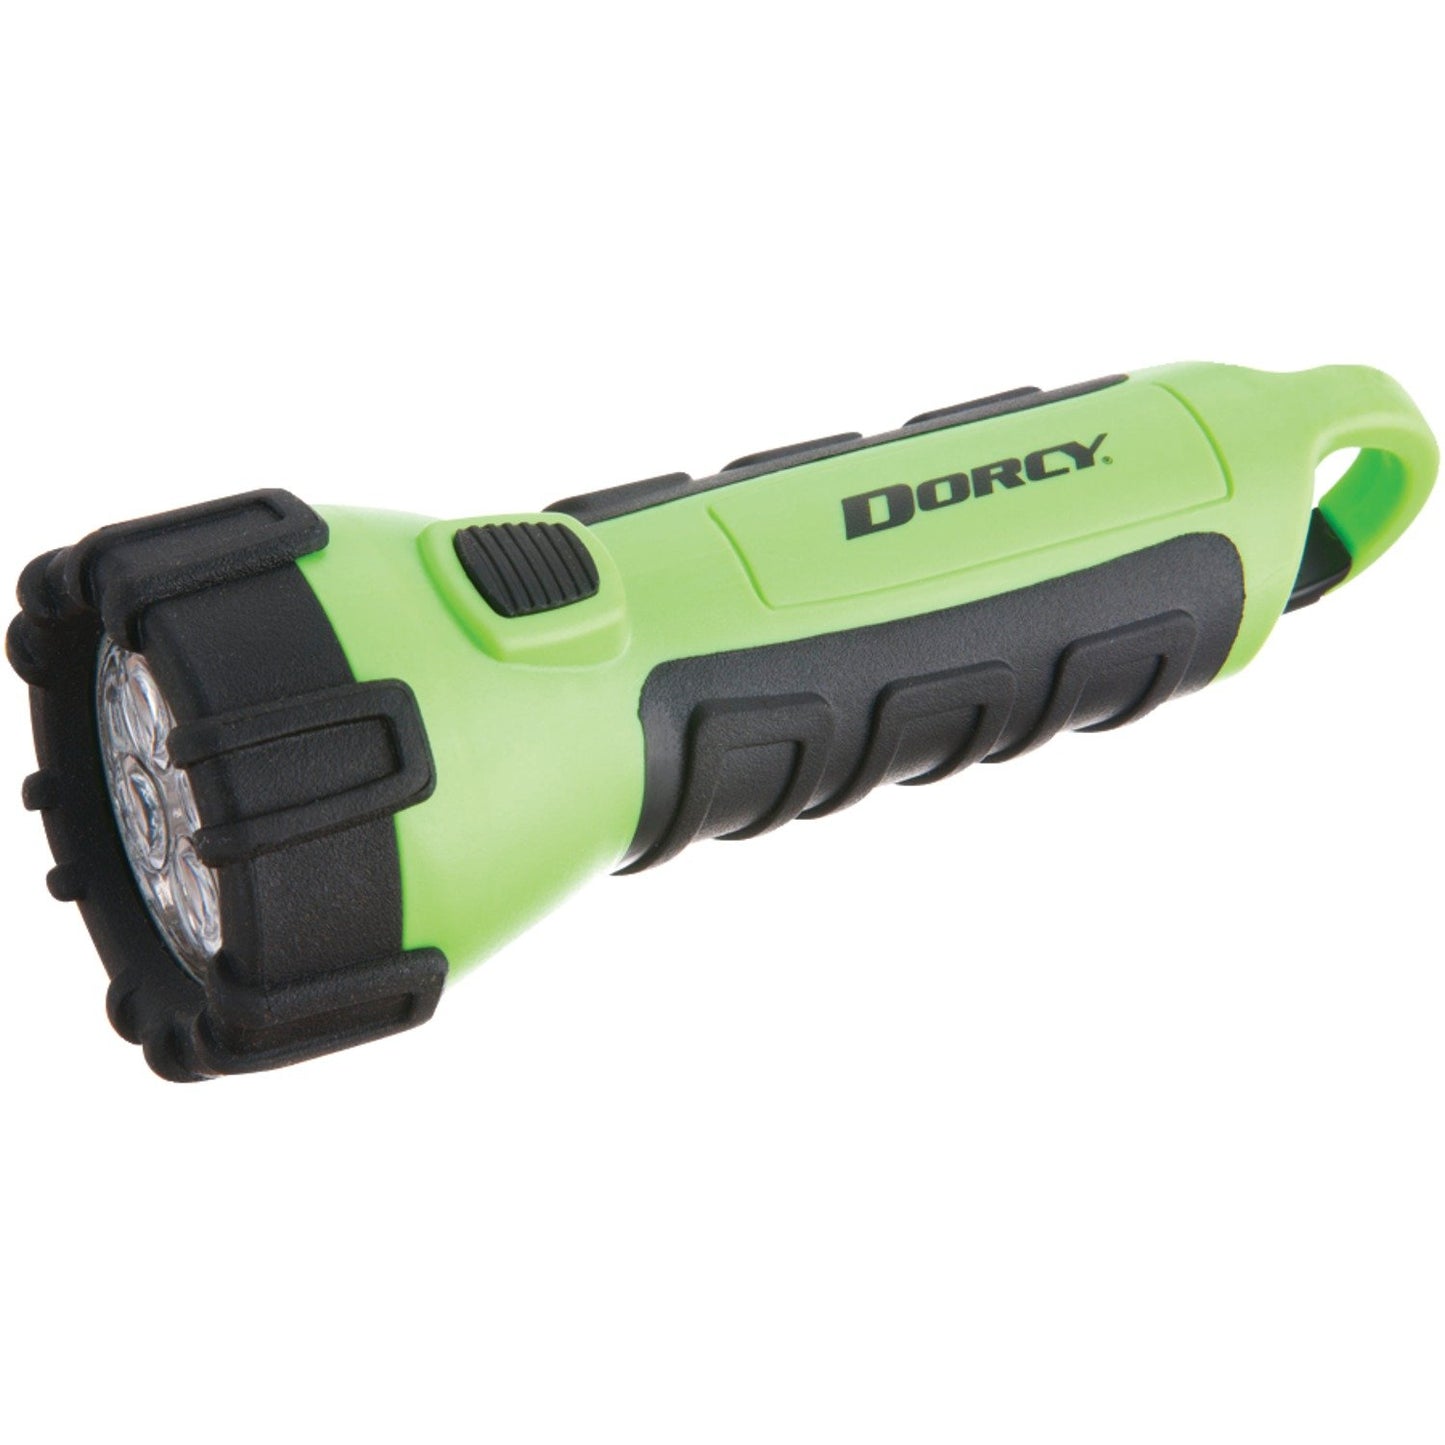 1) DORCY 41-2511 4 LED Floating Flashlight Random Case Color Blue/Green/Pink or Purple